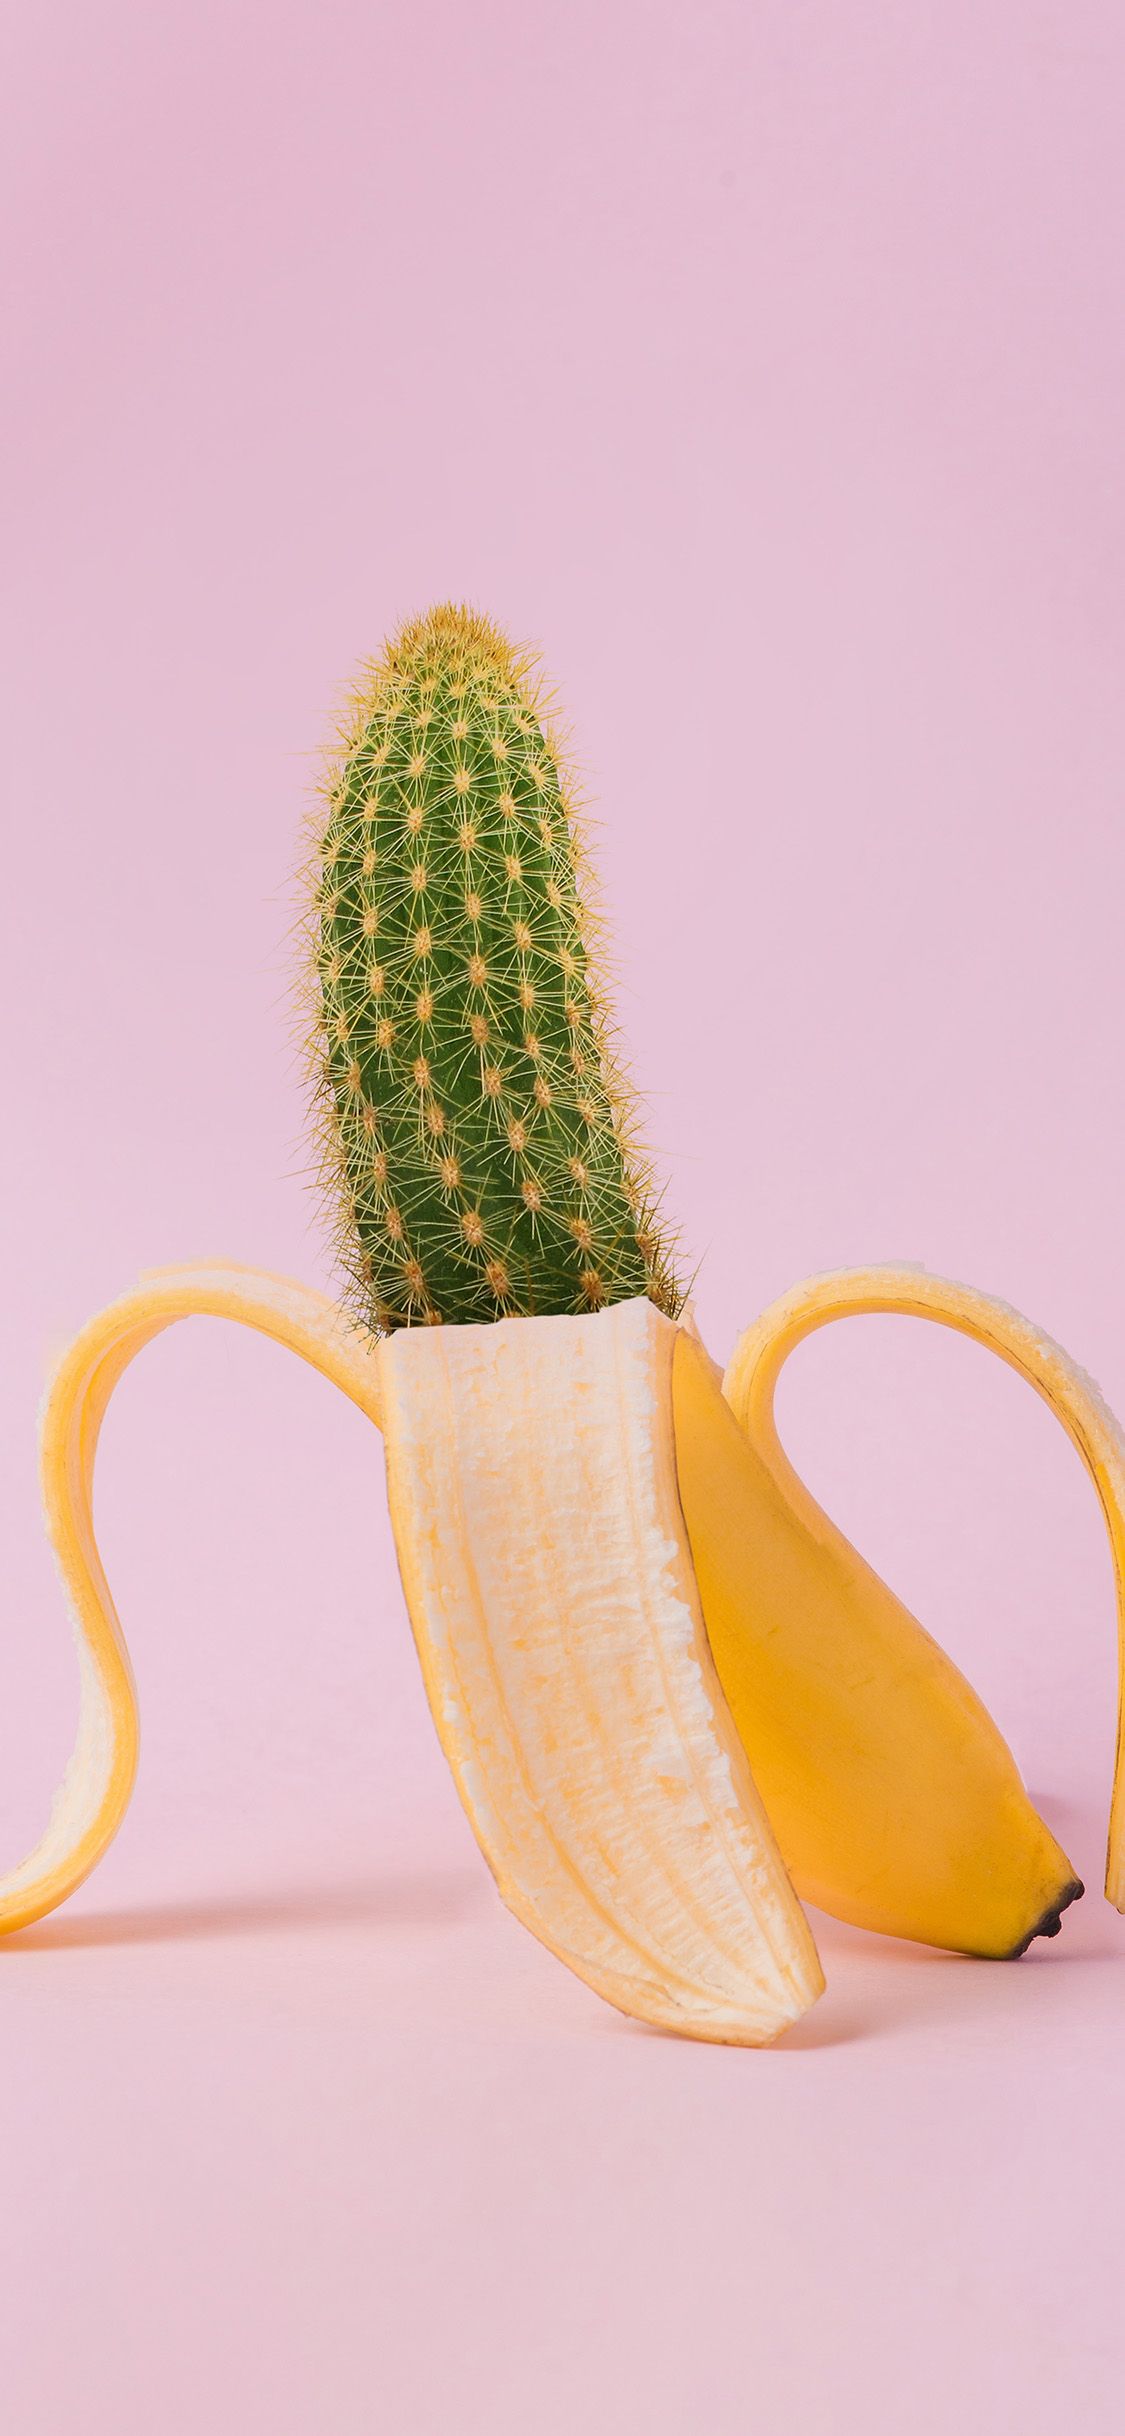 Art Banana Cactus Wallpaper